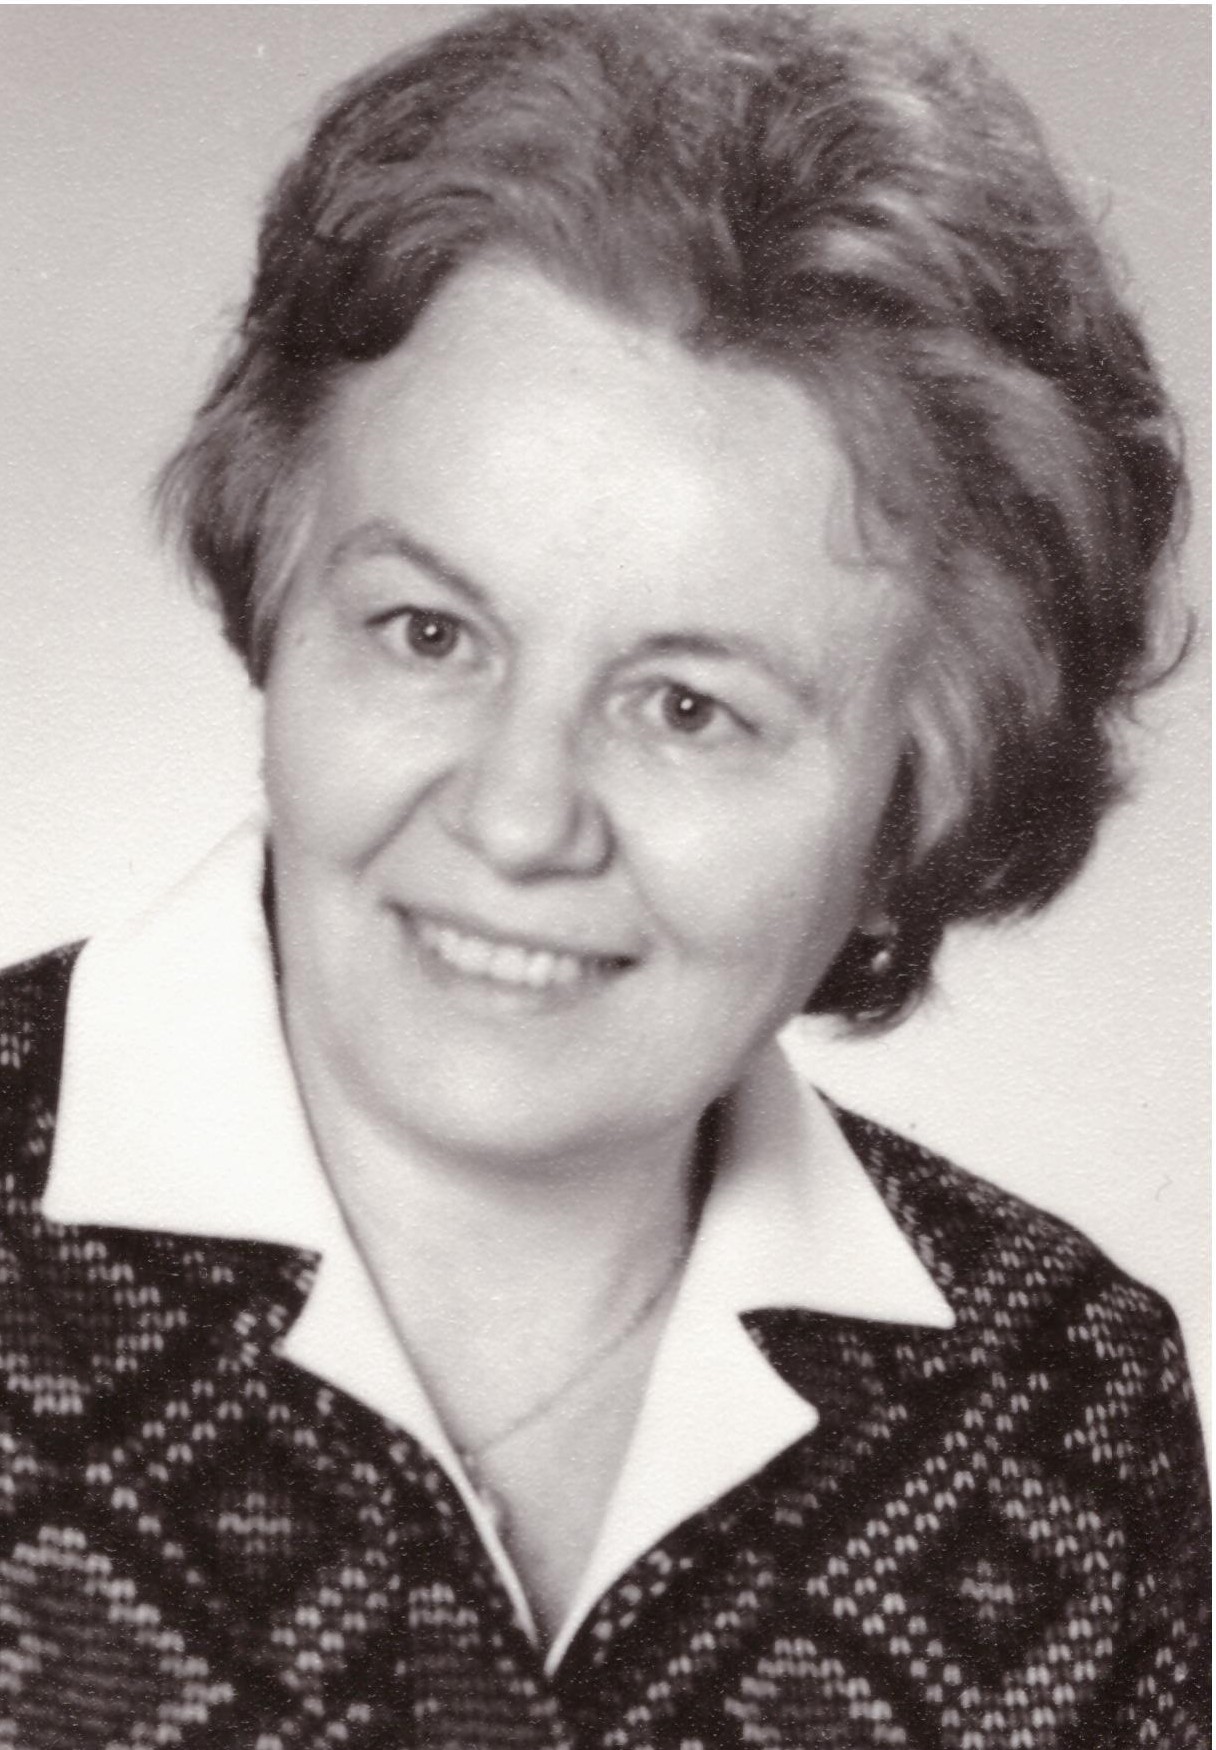 Marie Nováková in 1980s